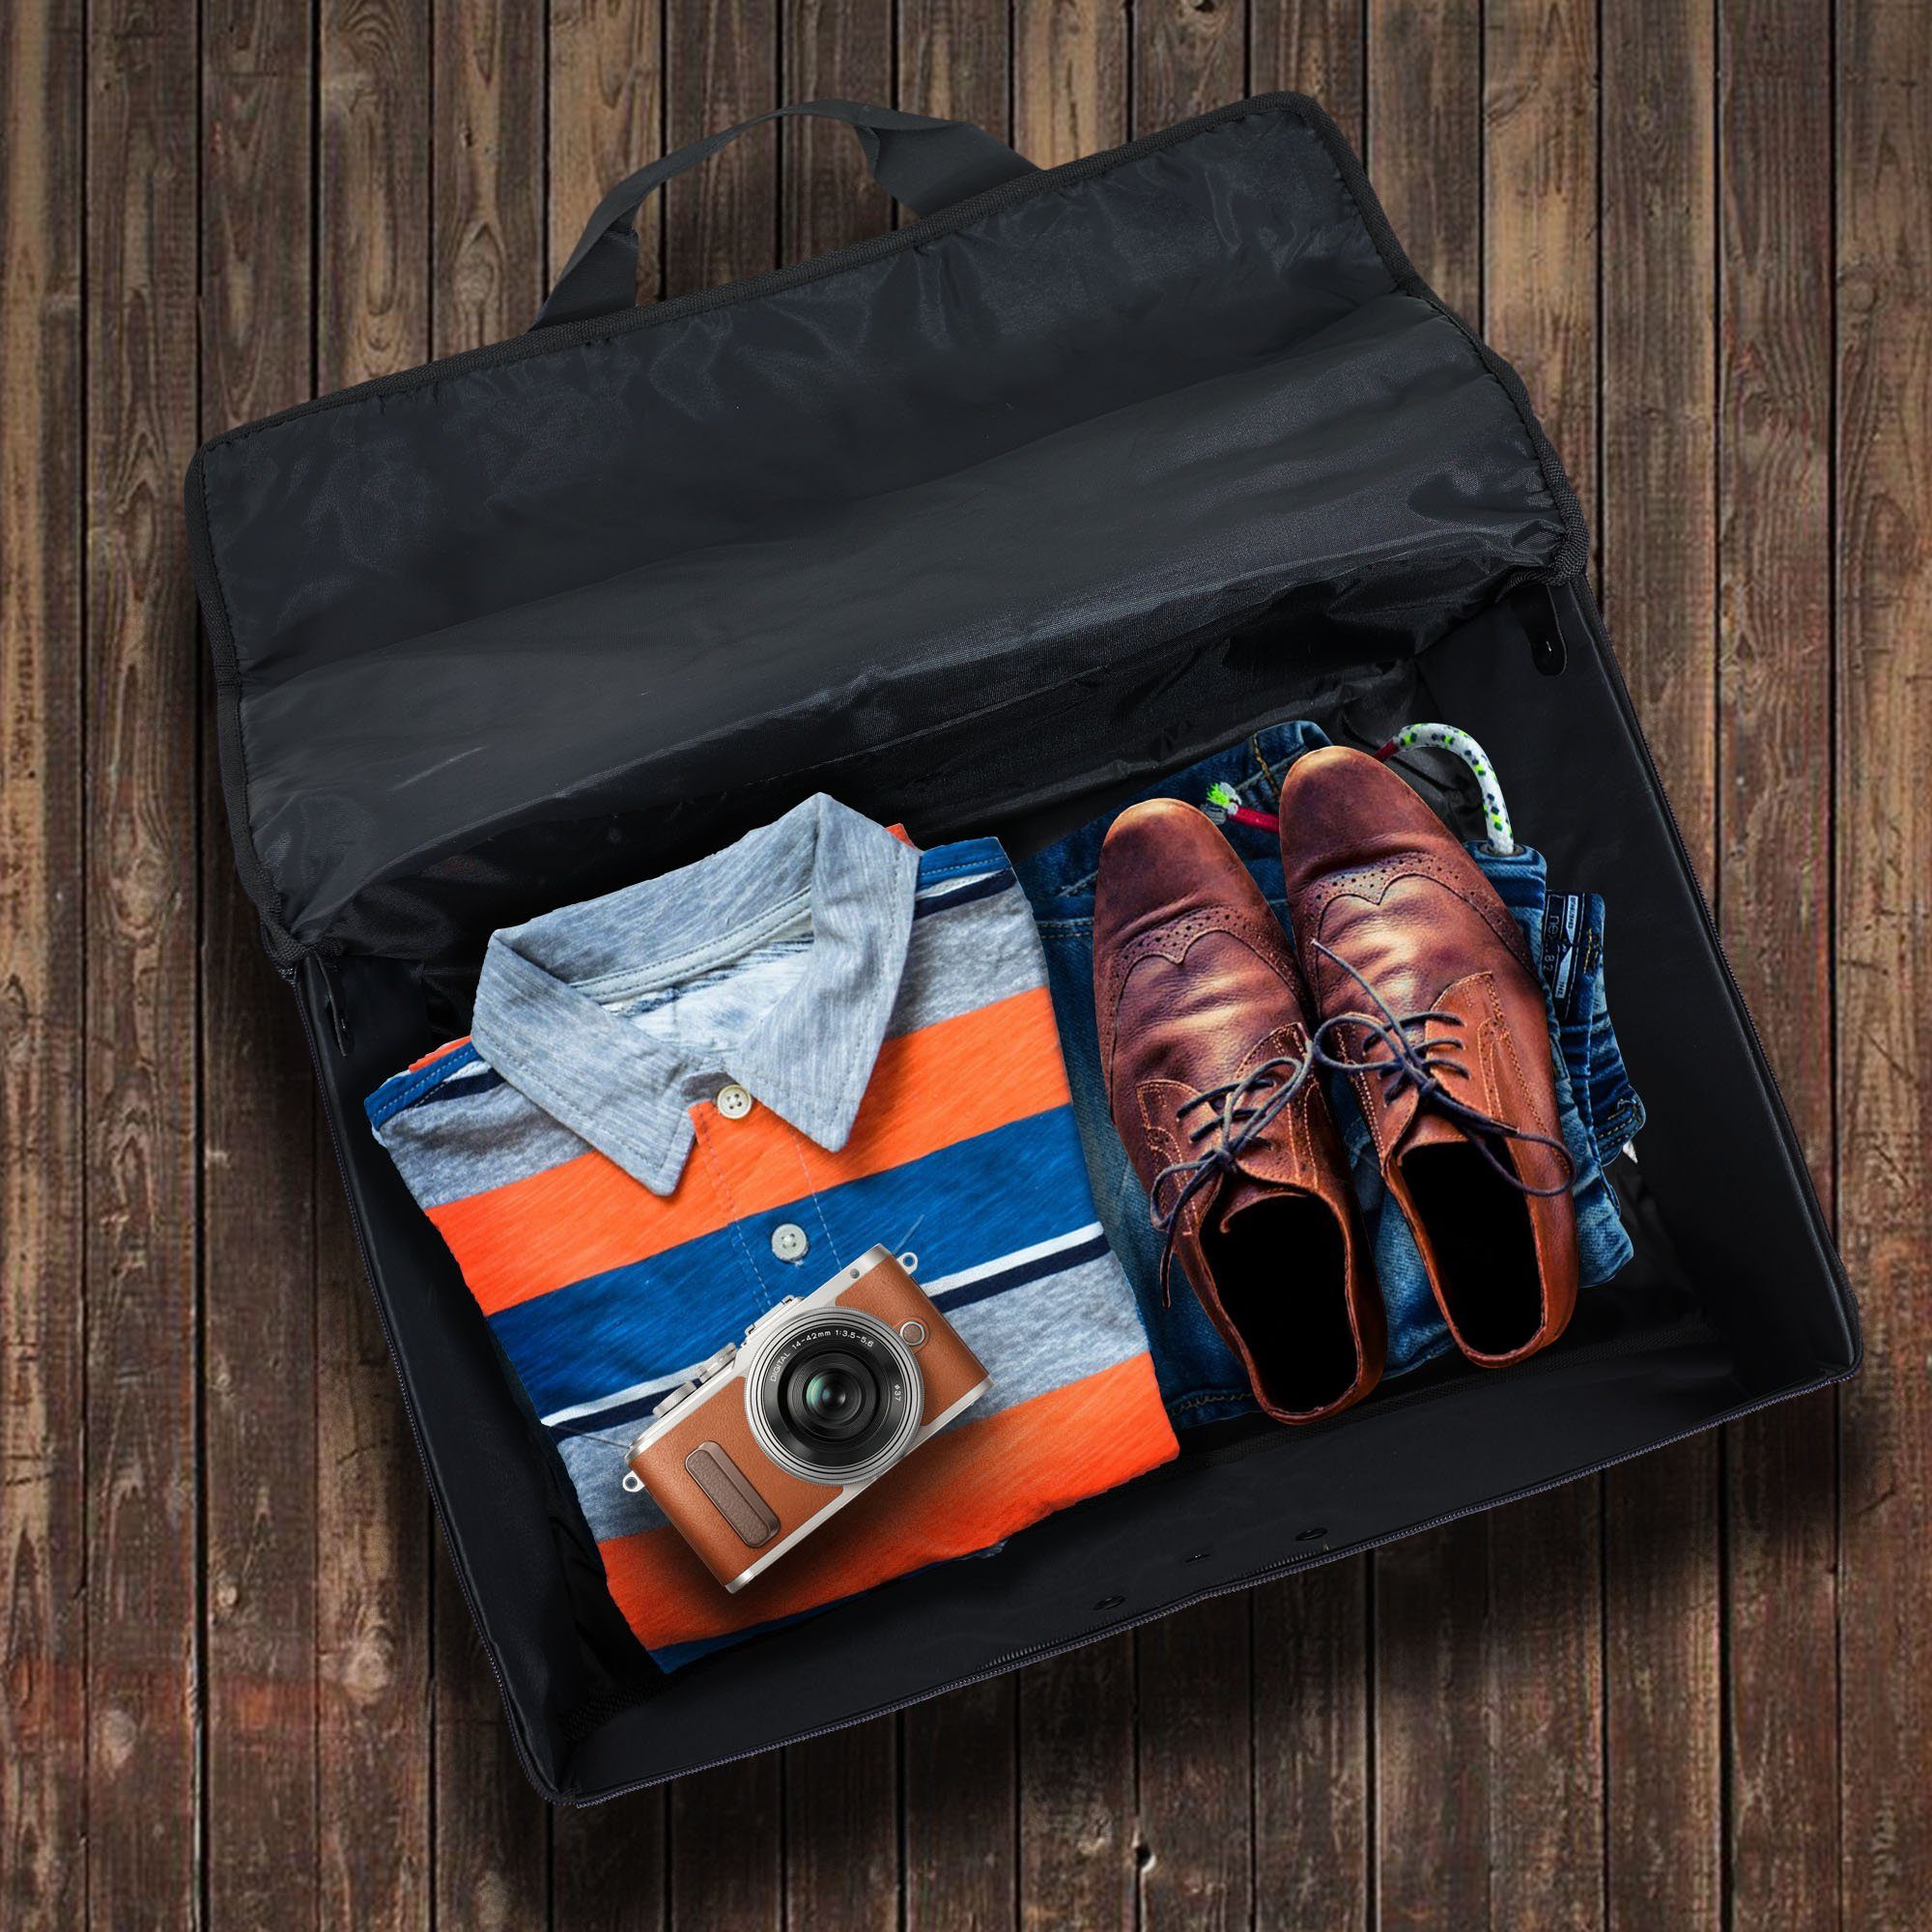 Kurzreise-Tasche (1) Reise-Gepäck Board Reisetasche achilles On Faltbare Handgepäck-Tasche